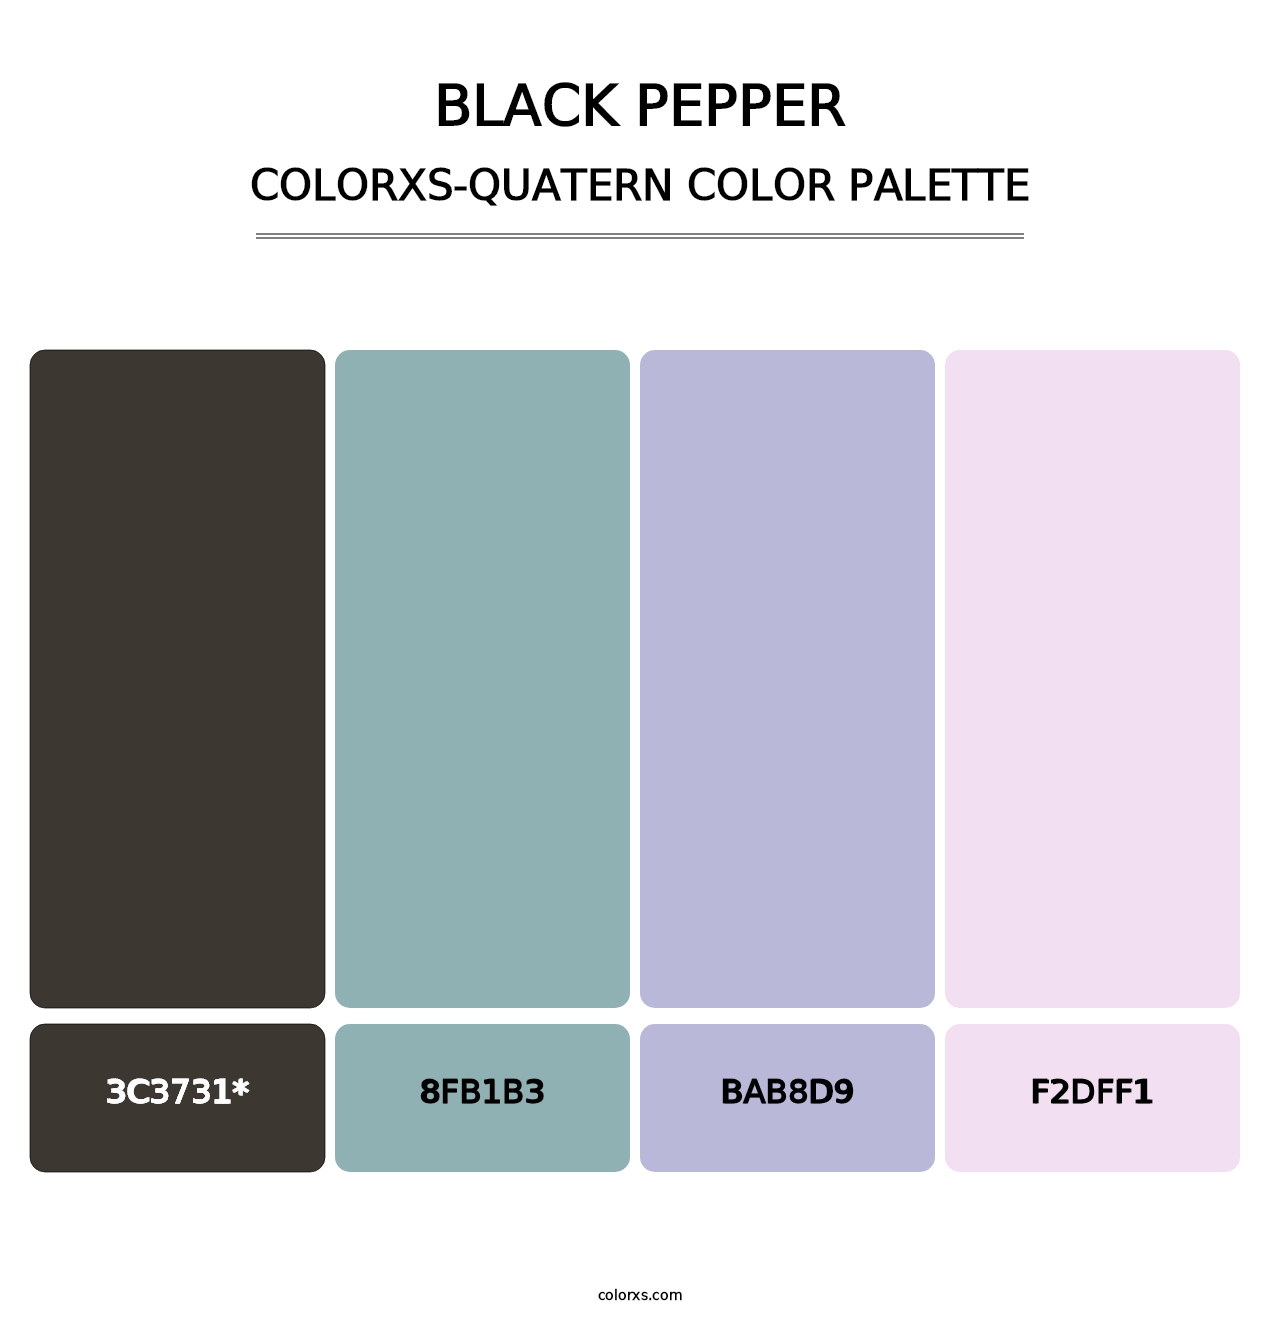 Black Pepper - Colorxs Quatern Palette